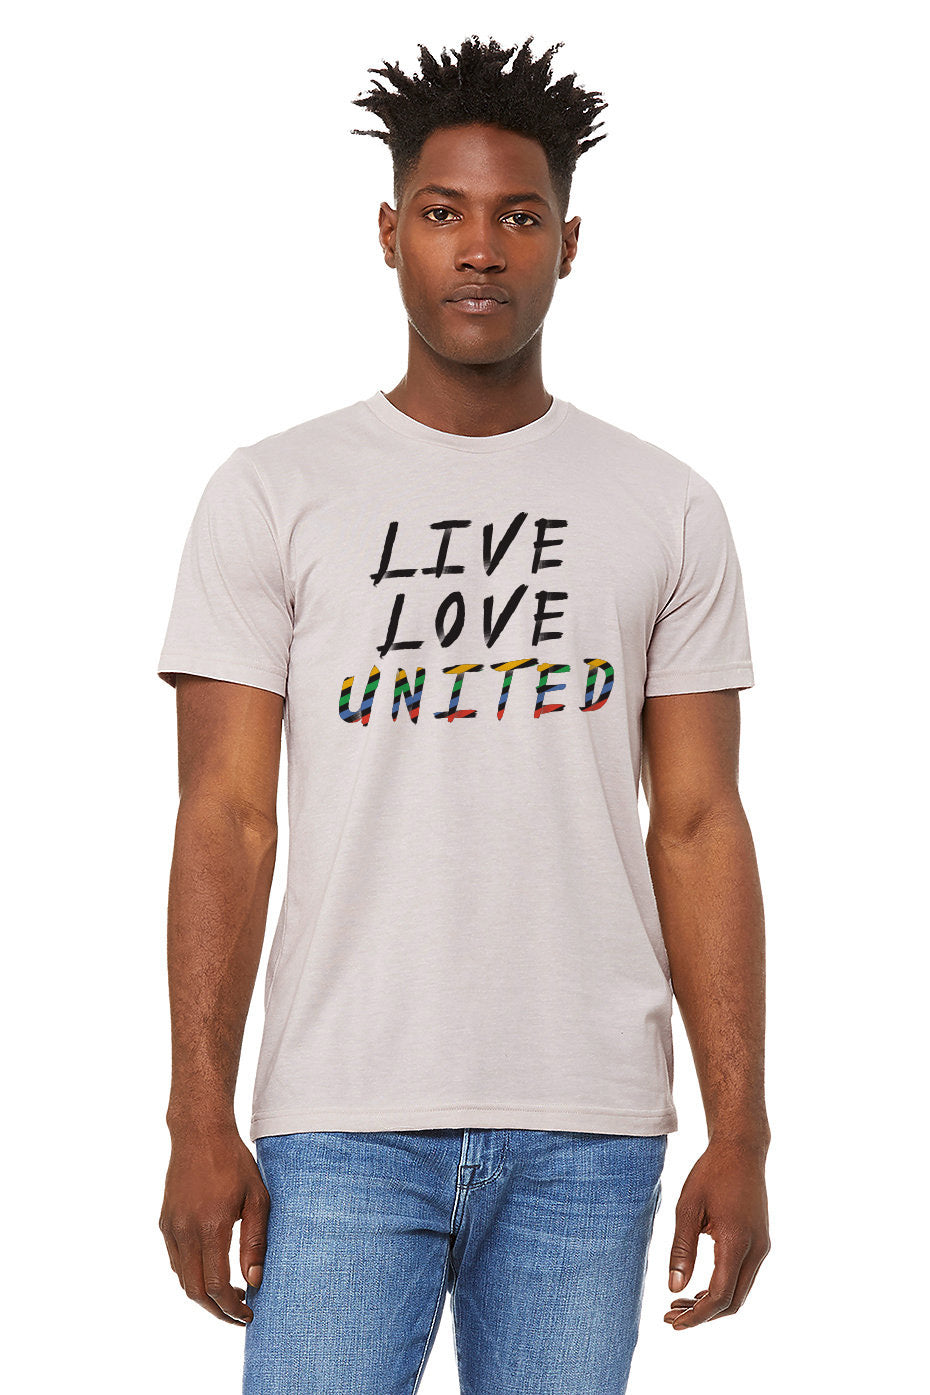 Slogan Short-Sleeve Unisex T-Shirt - liveloveunited.com